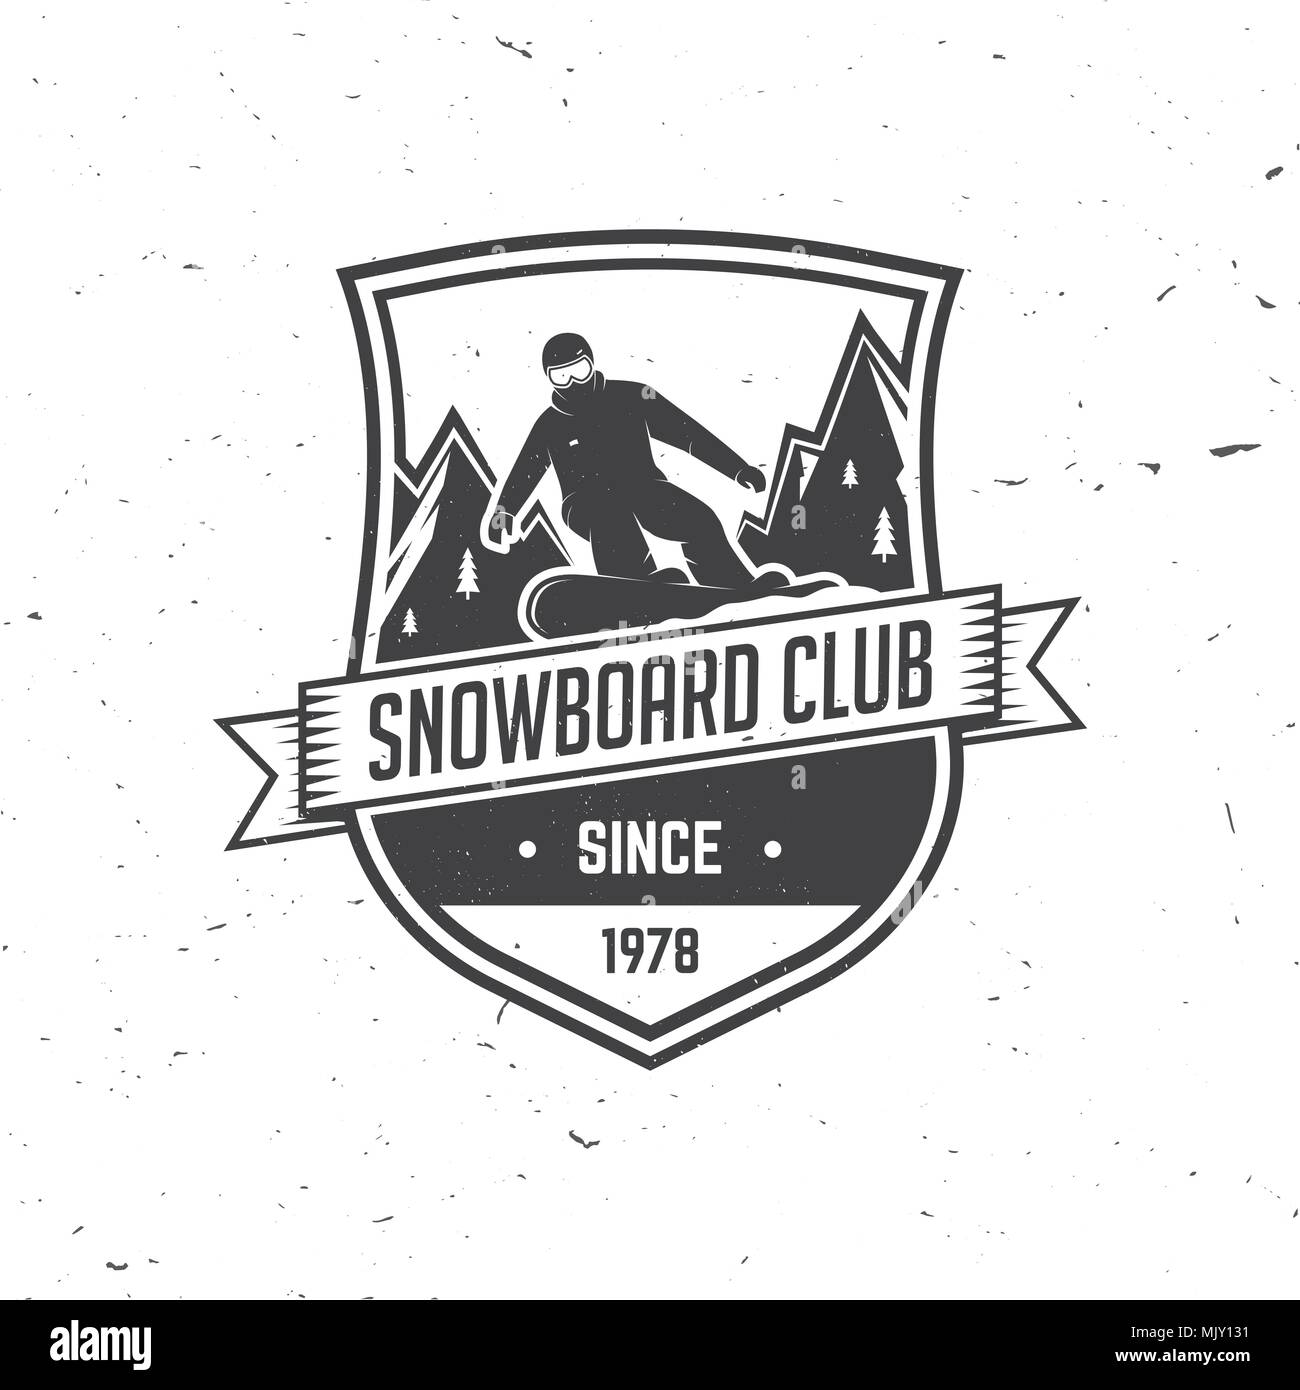 Snowboard Club. Illustrazione Vettoriale. Concetto di t-shirt, stampare il timbro o il raccordo a t. Vintage design tipografia con snowboarder e silhouette di montagna. Extre Illustrazione Vettoriale